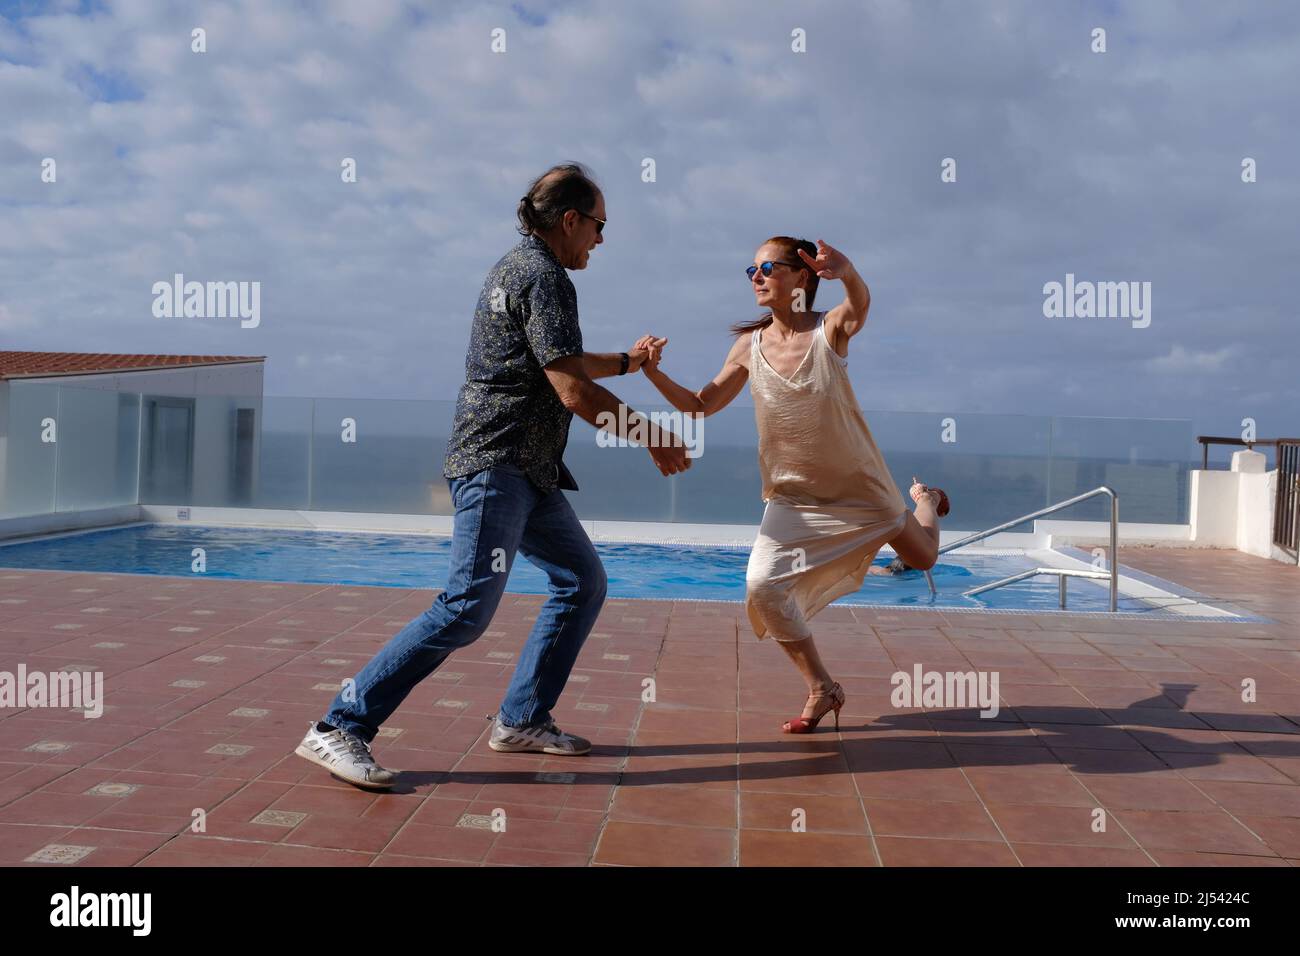 Deux personnes pratiquent la danse, le tango, sur le toit d'un hôtel près d'une piscine. Banque D'Images